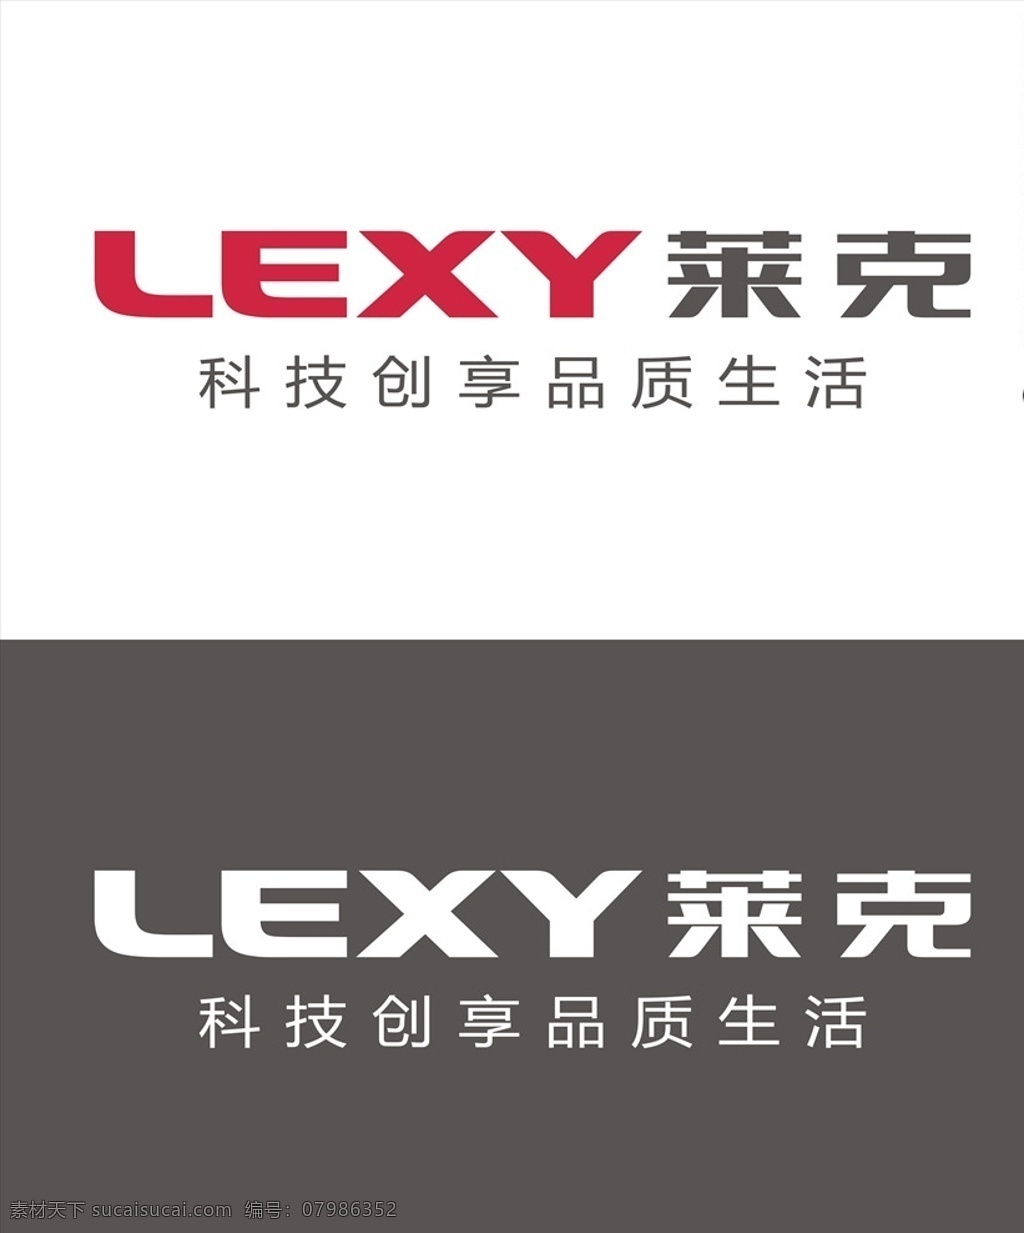 莱克 logo 电气 lexy标志 标志矢量图 ai格式 lexy 莱克电气 小家电 矢量logo 创意设计 logo设计 设计素材 标识 企业标识 图标 标志 矢量